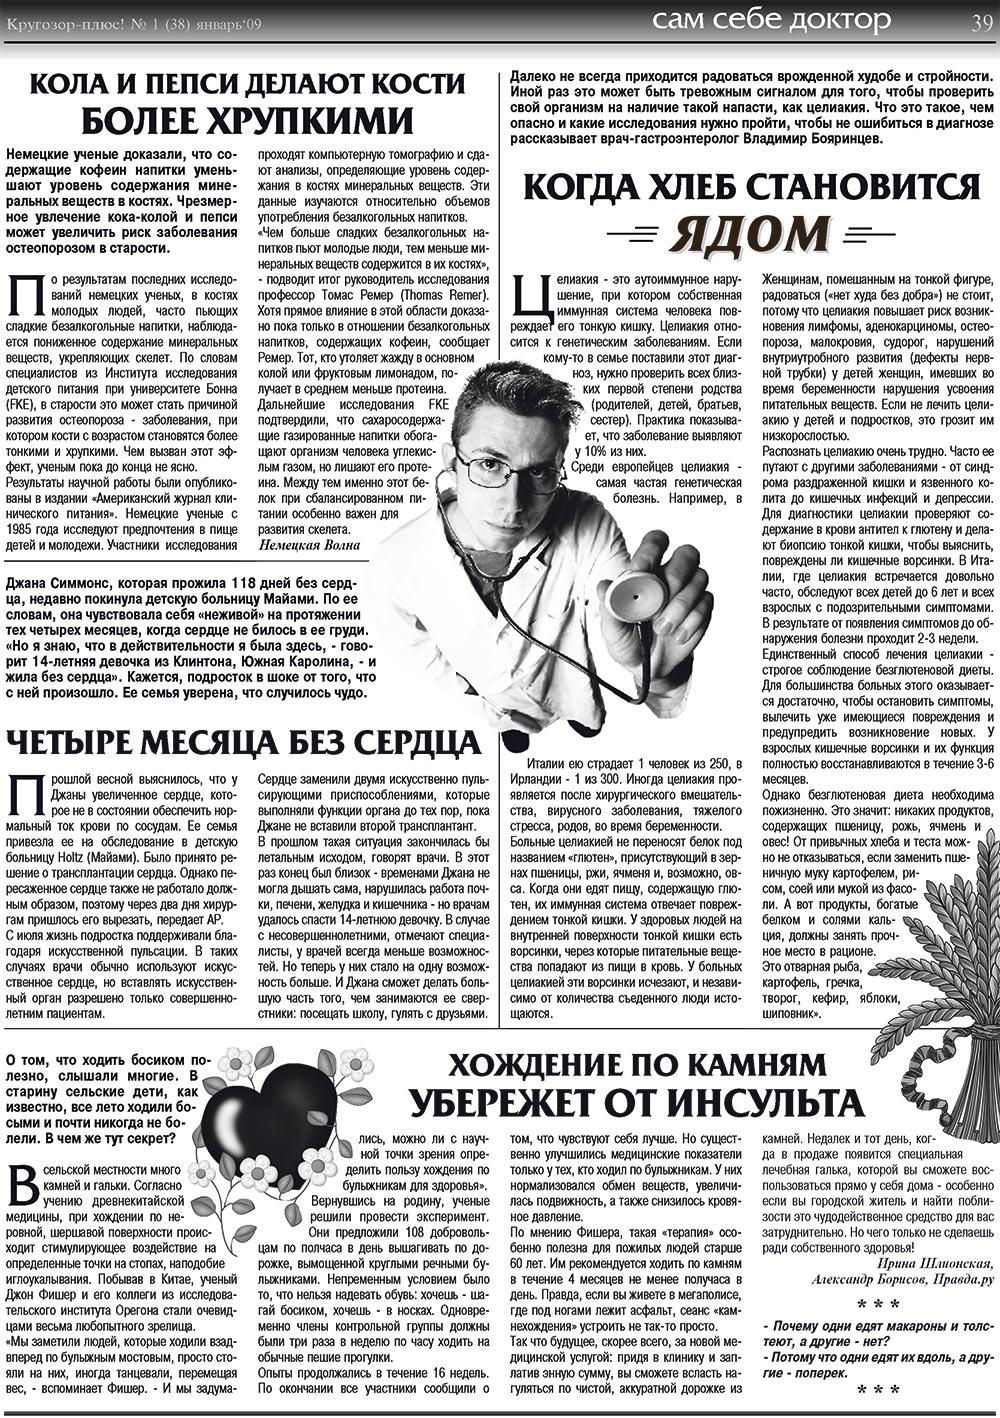 Кругозор плюс!, газета. 2009 №1 стр.39